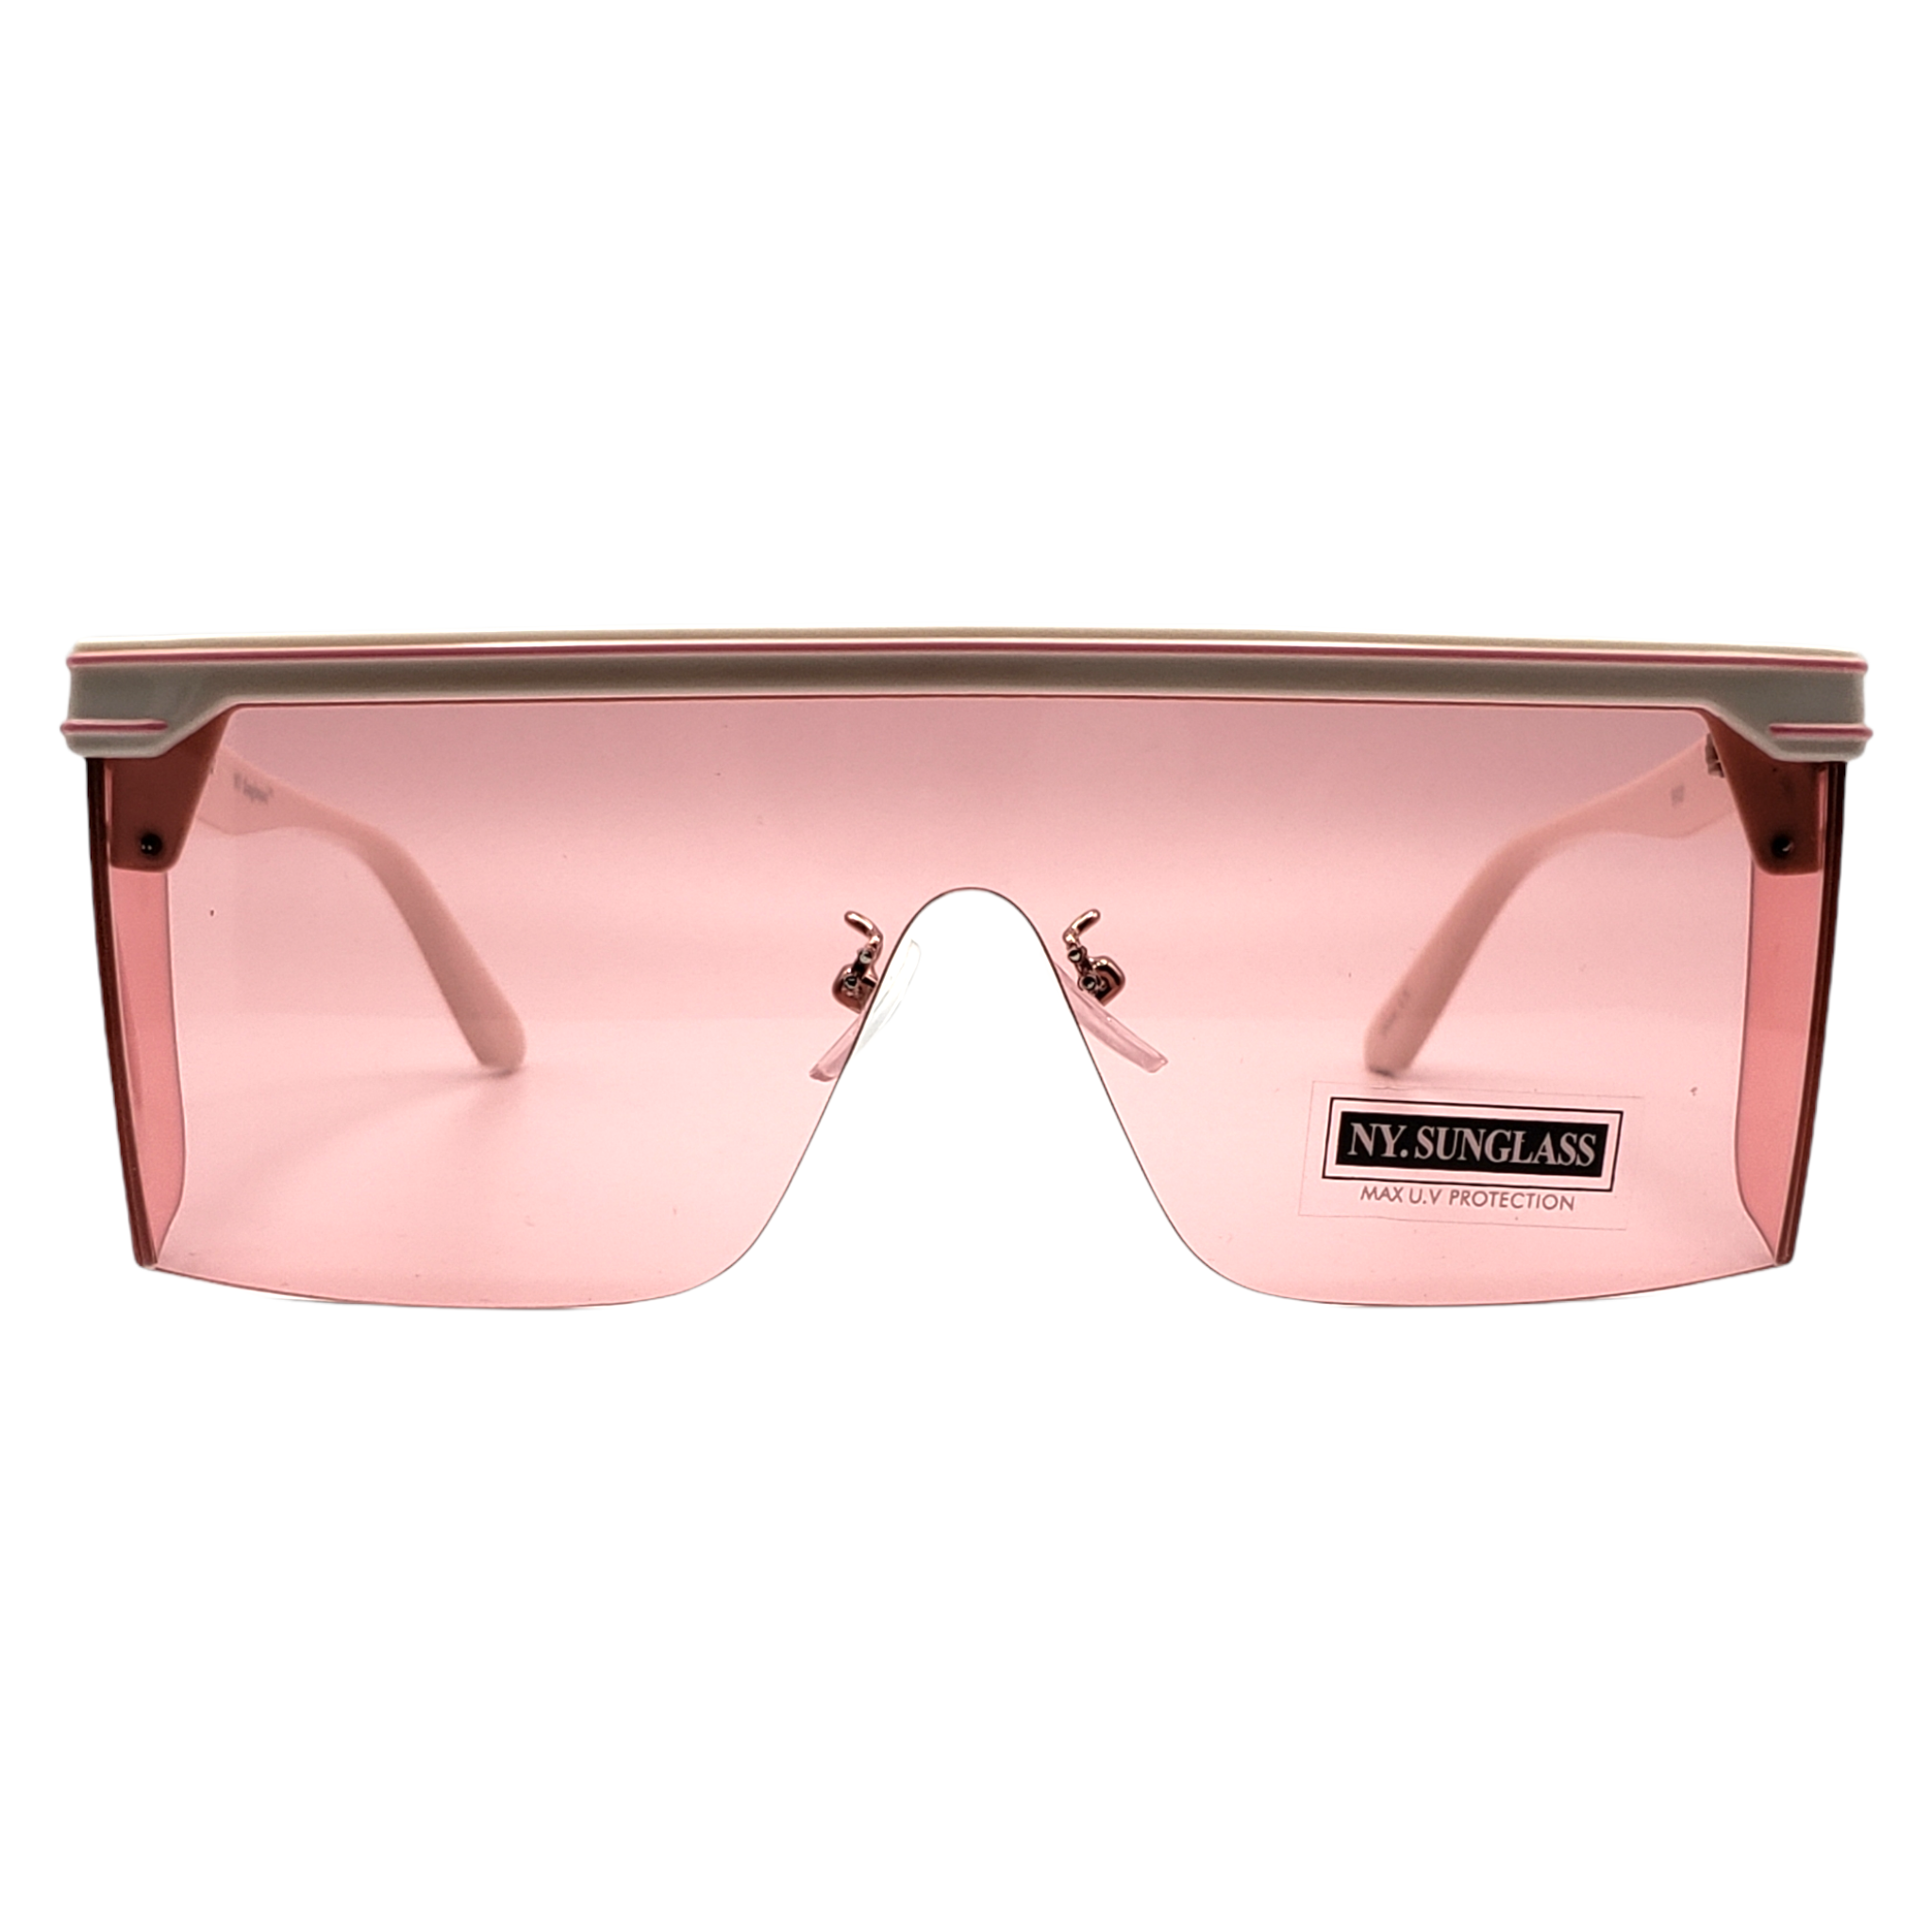 N.Y. Sunglasses (#9908)